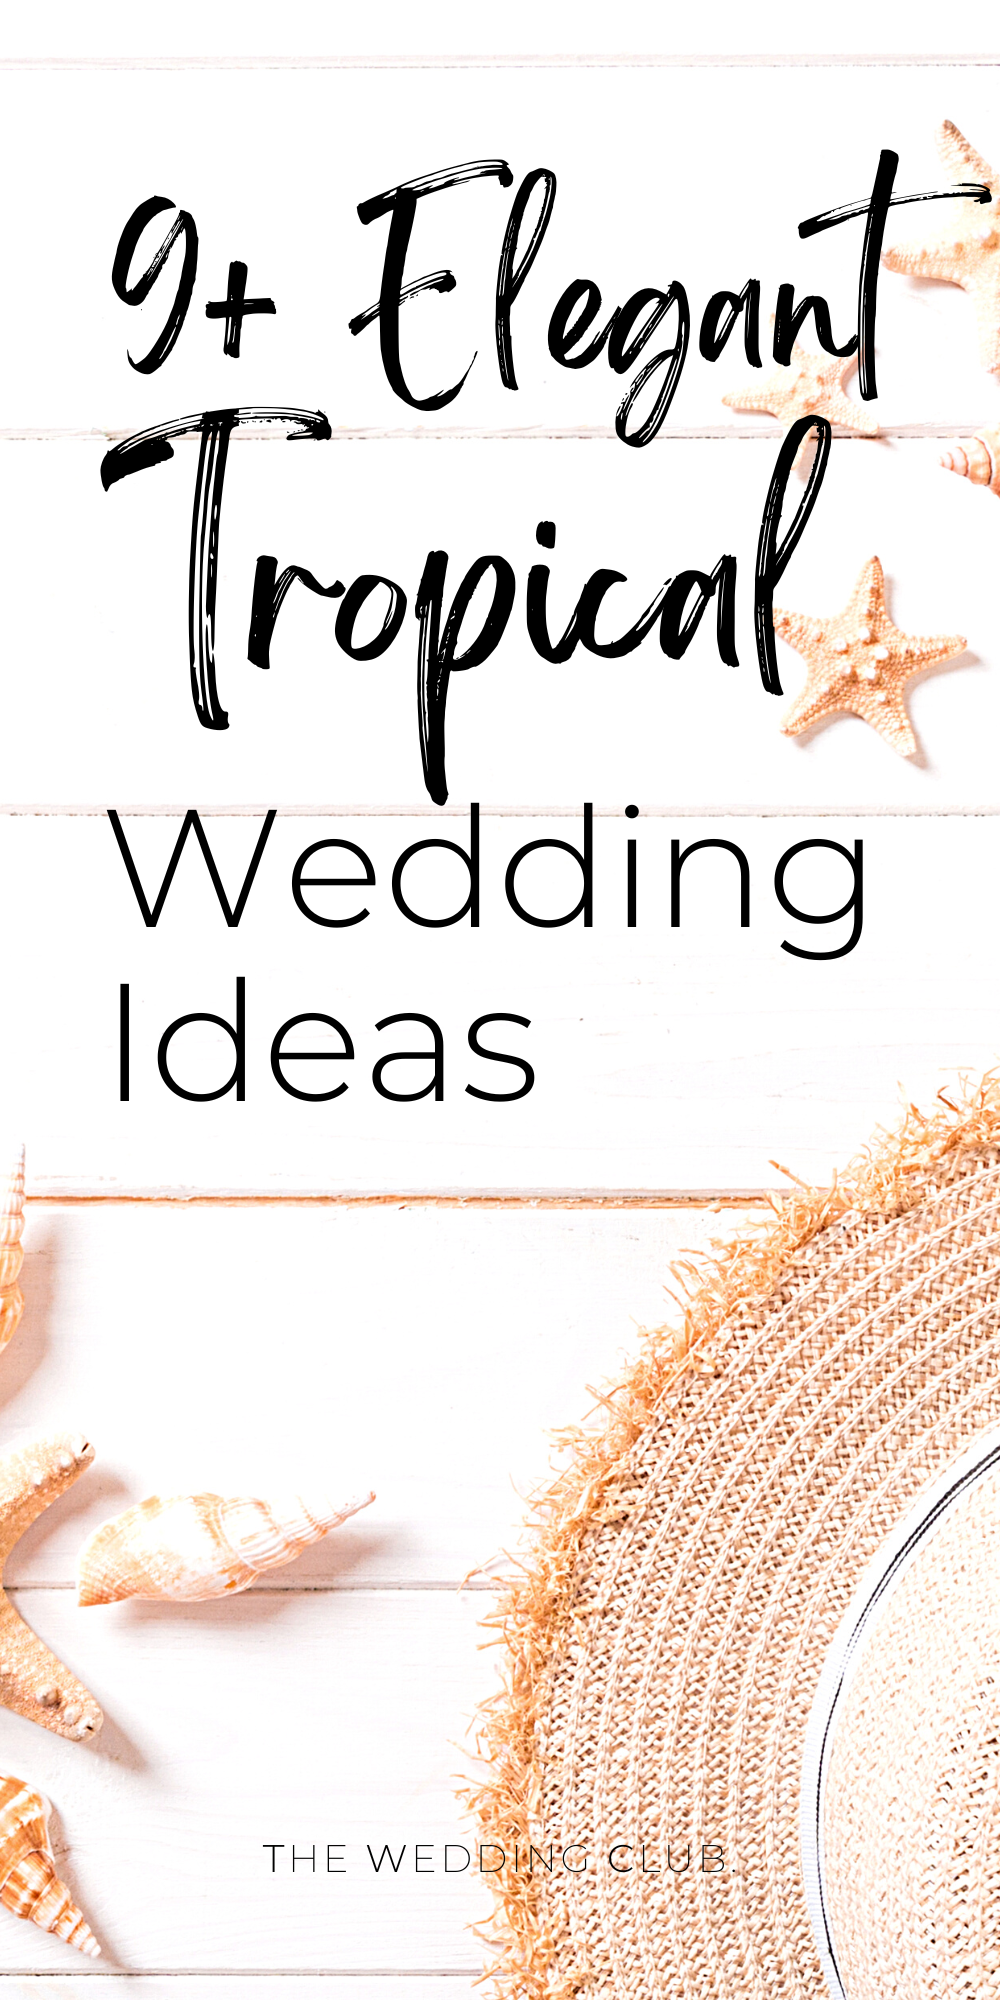 Elegant Tropical Wedding Theme Ideas by The Wedding Club